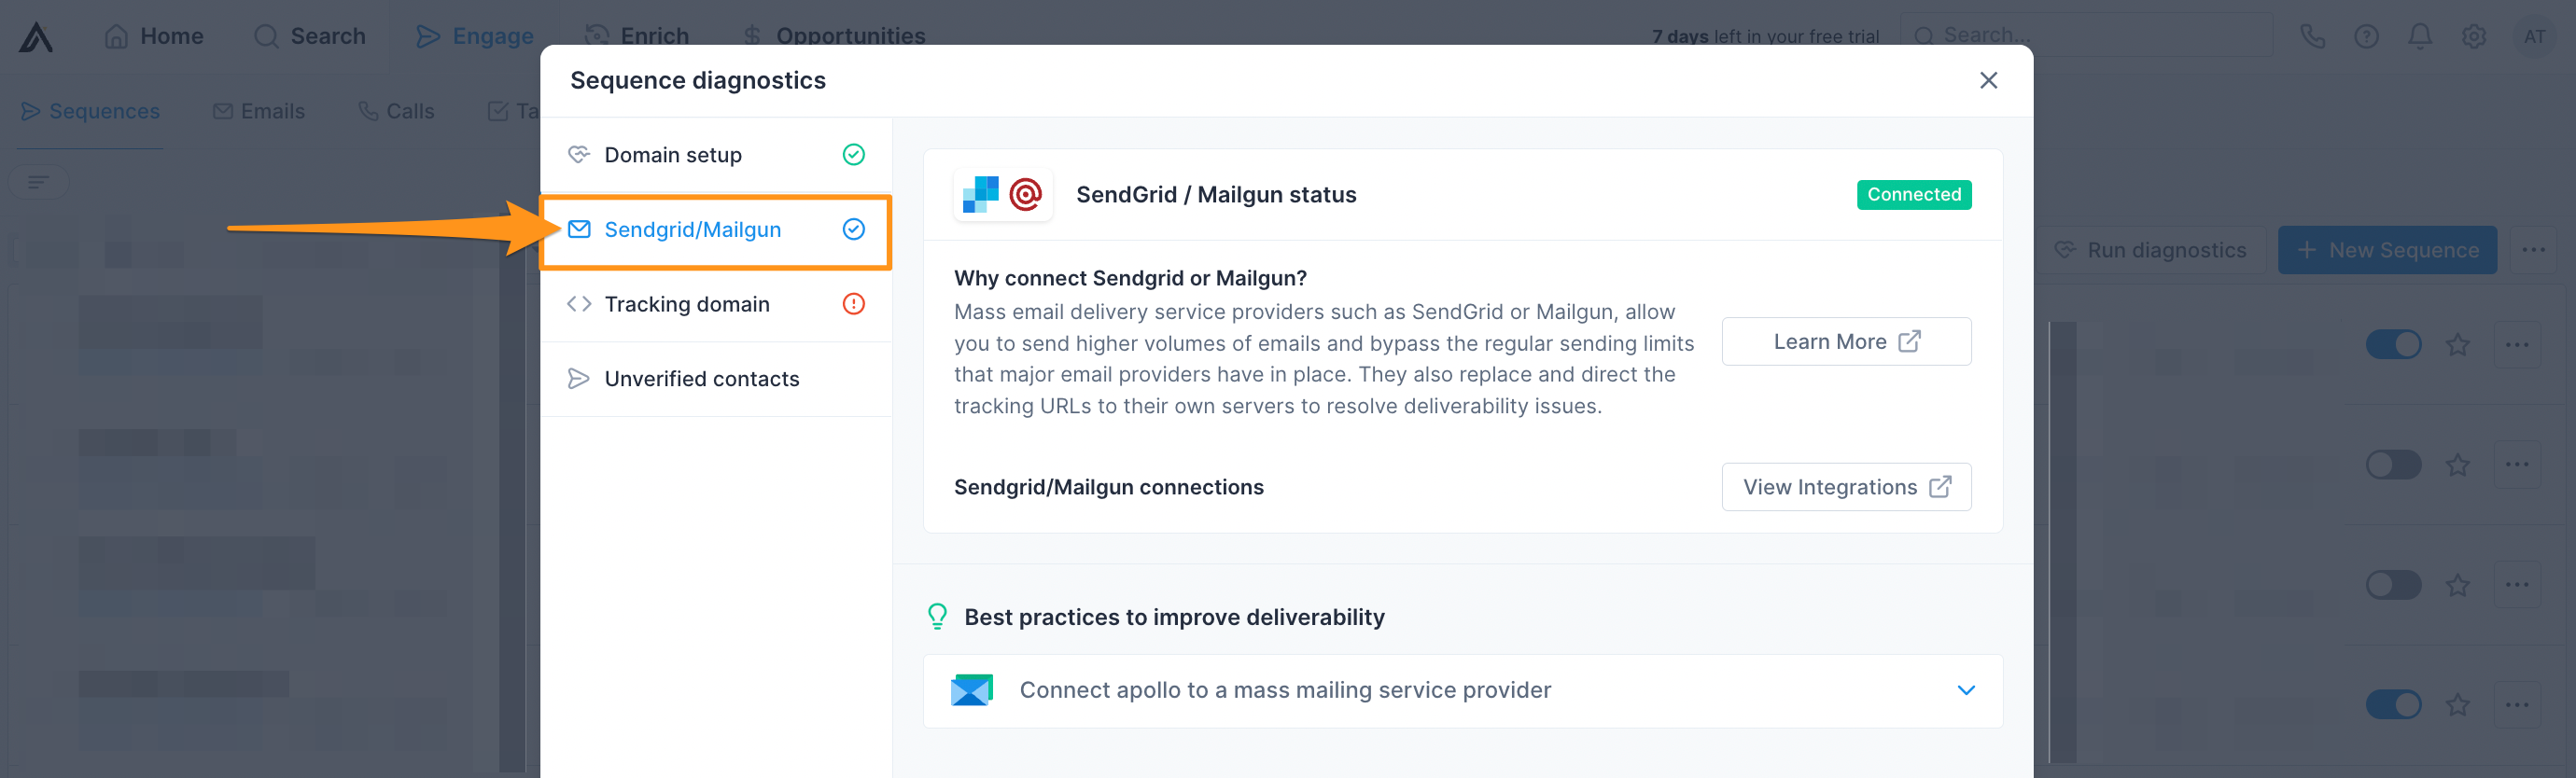 SendGrid/Mailgun in Sequence Diagnostics